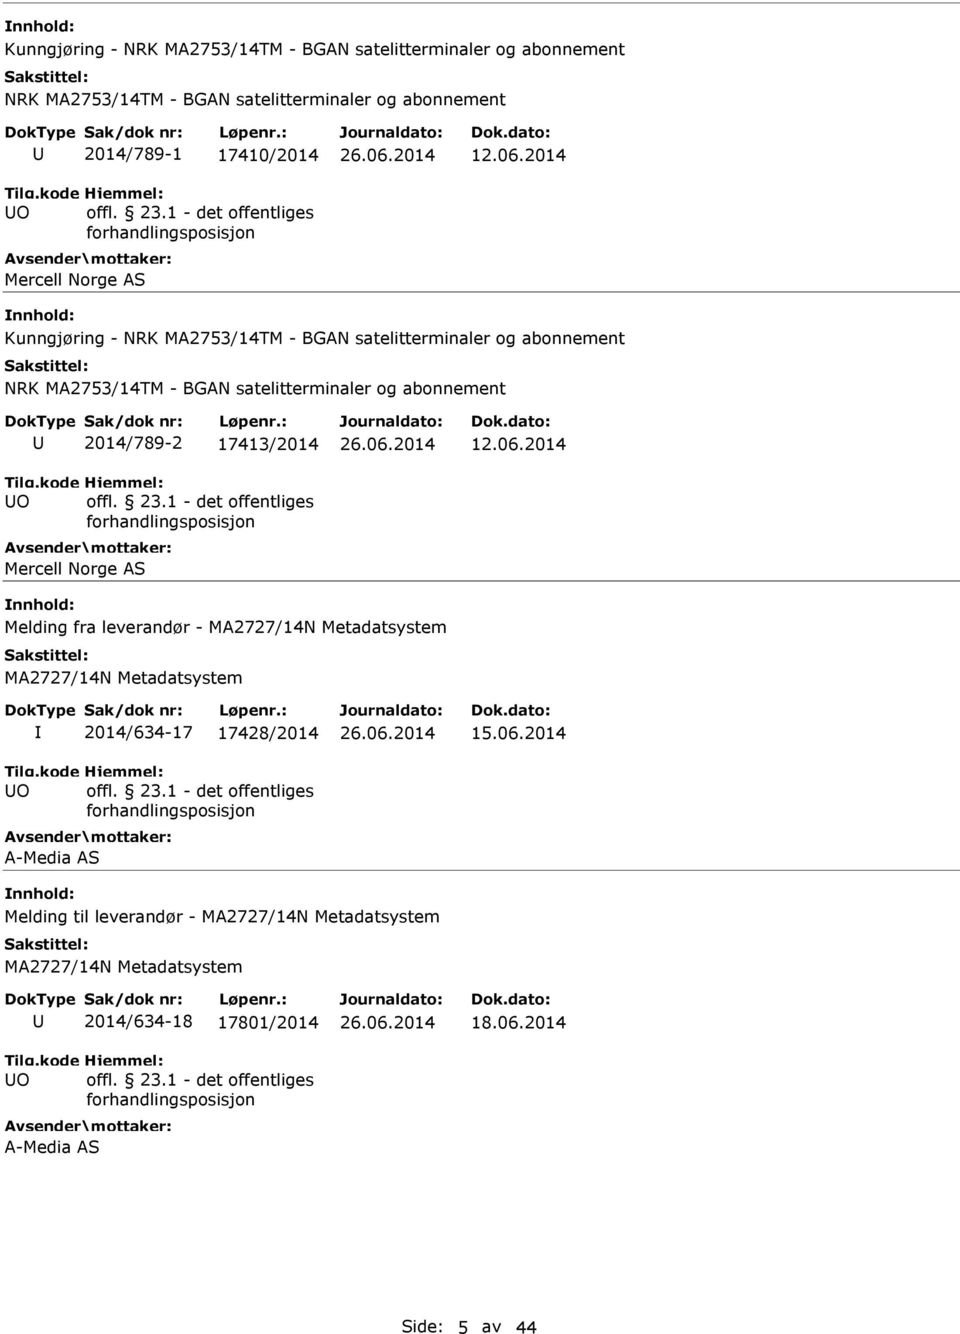 2014 Kunngjøring - NRK MA2753/14TM - BGAN satelitterminaler og abonnement NRK MA2753/14TM - BGAN satelitterminaler og abonnement O 2014/789-2 17413/2014 offl. 23.